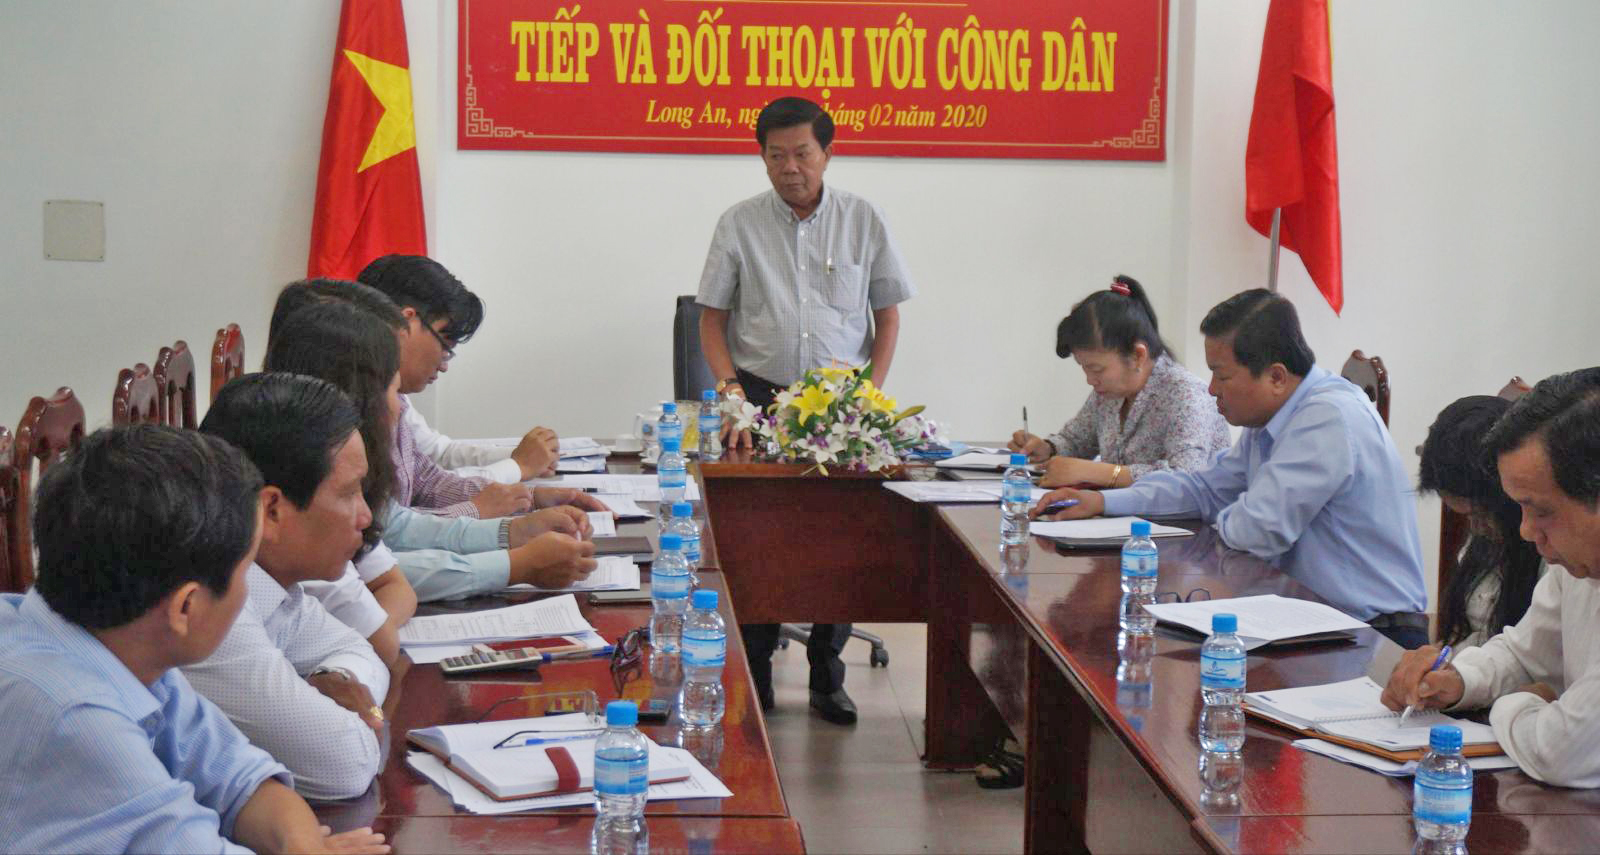 Chủ tịch UBND tỉnh Long An - Trần Văn Cần chủ trì đối thoại